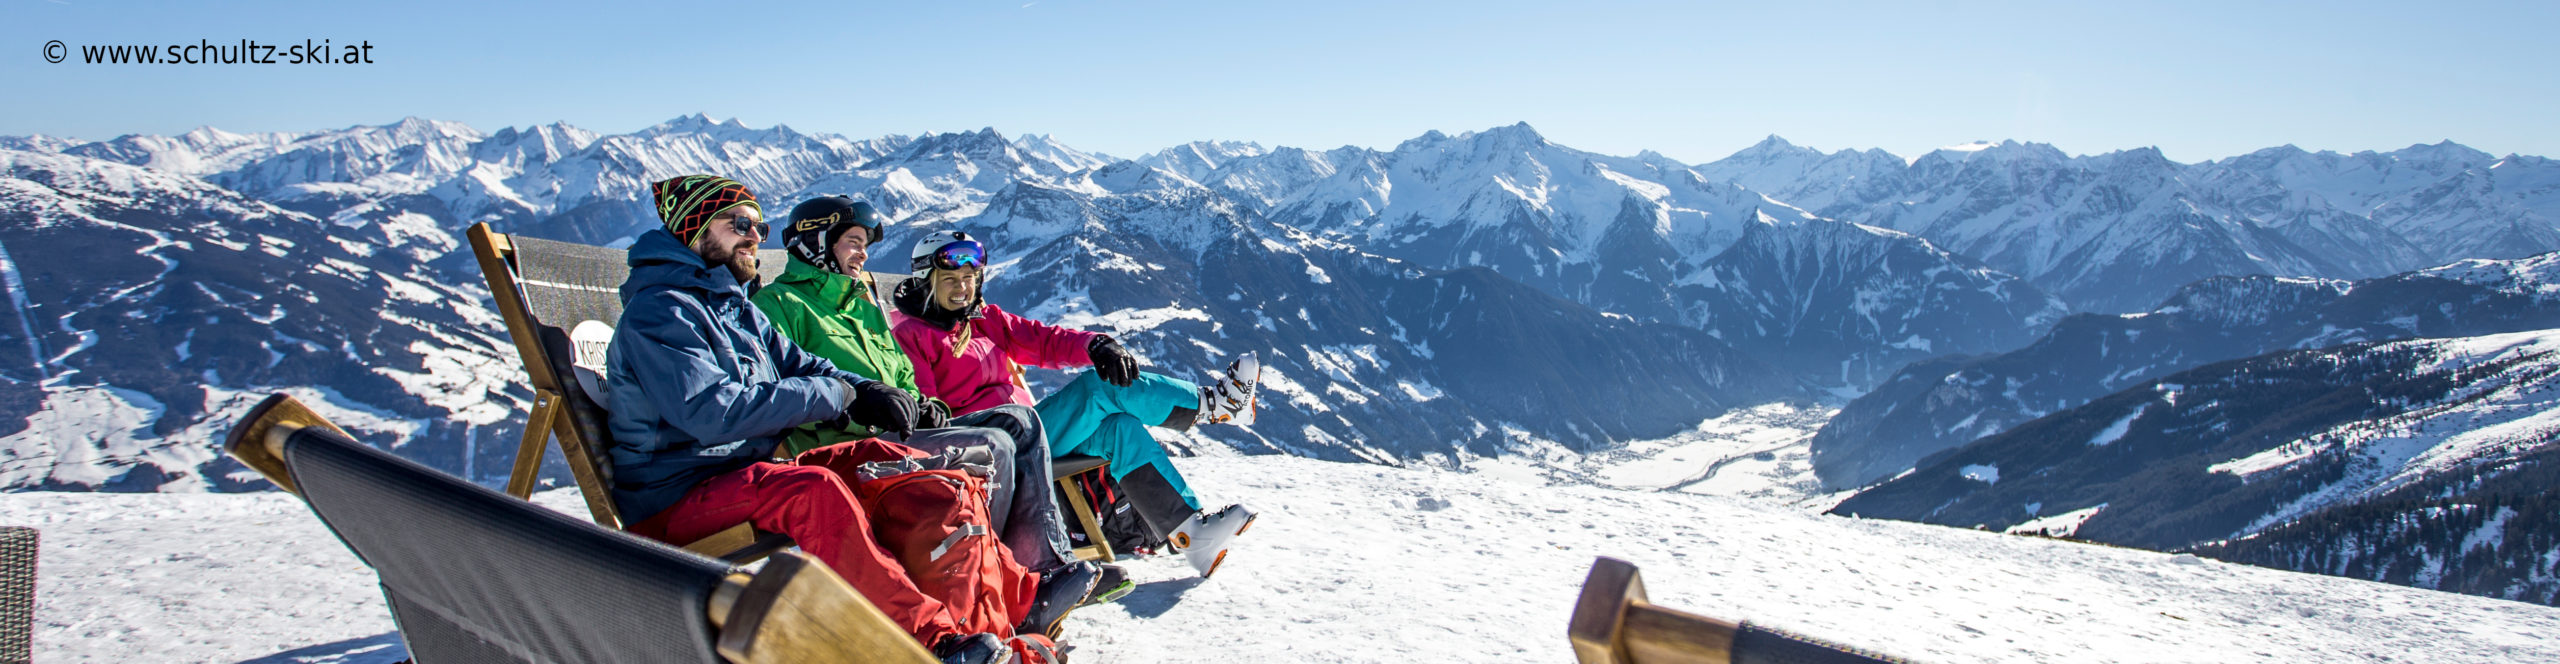 ZILLERTAL – Skiwochenende ab Freitag Nachmittag – Hotel in Strass – Skisafari Zell & Kaltenbach 